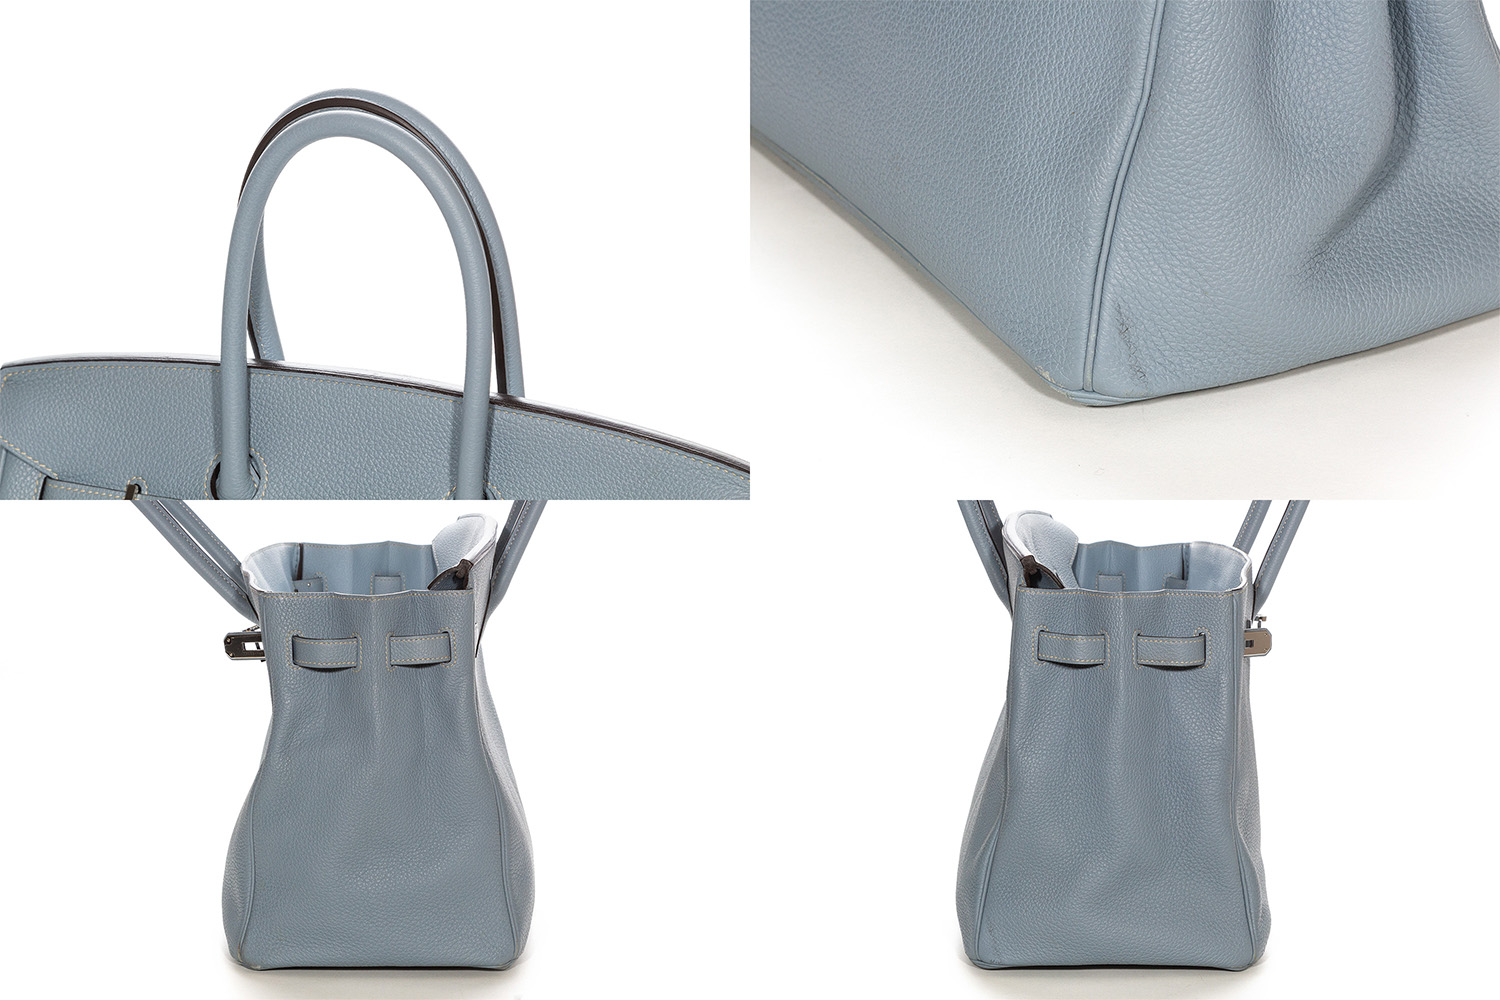 Lovely New Color Hermes Birkin Bag 35cm Blue Lin Bleu Lin Epsom